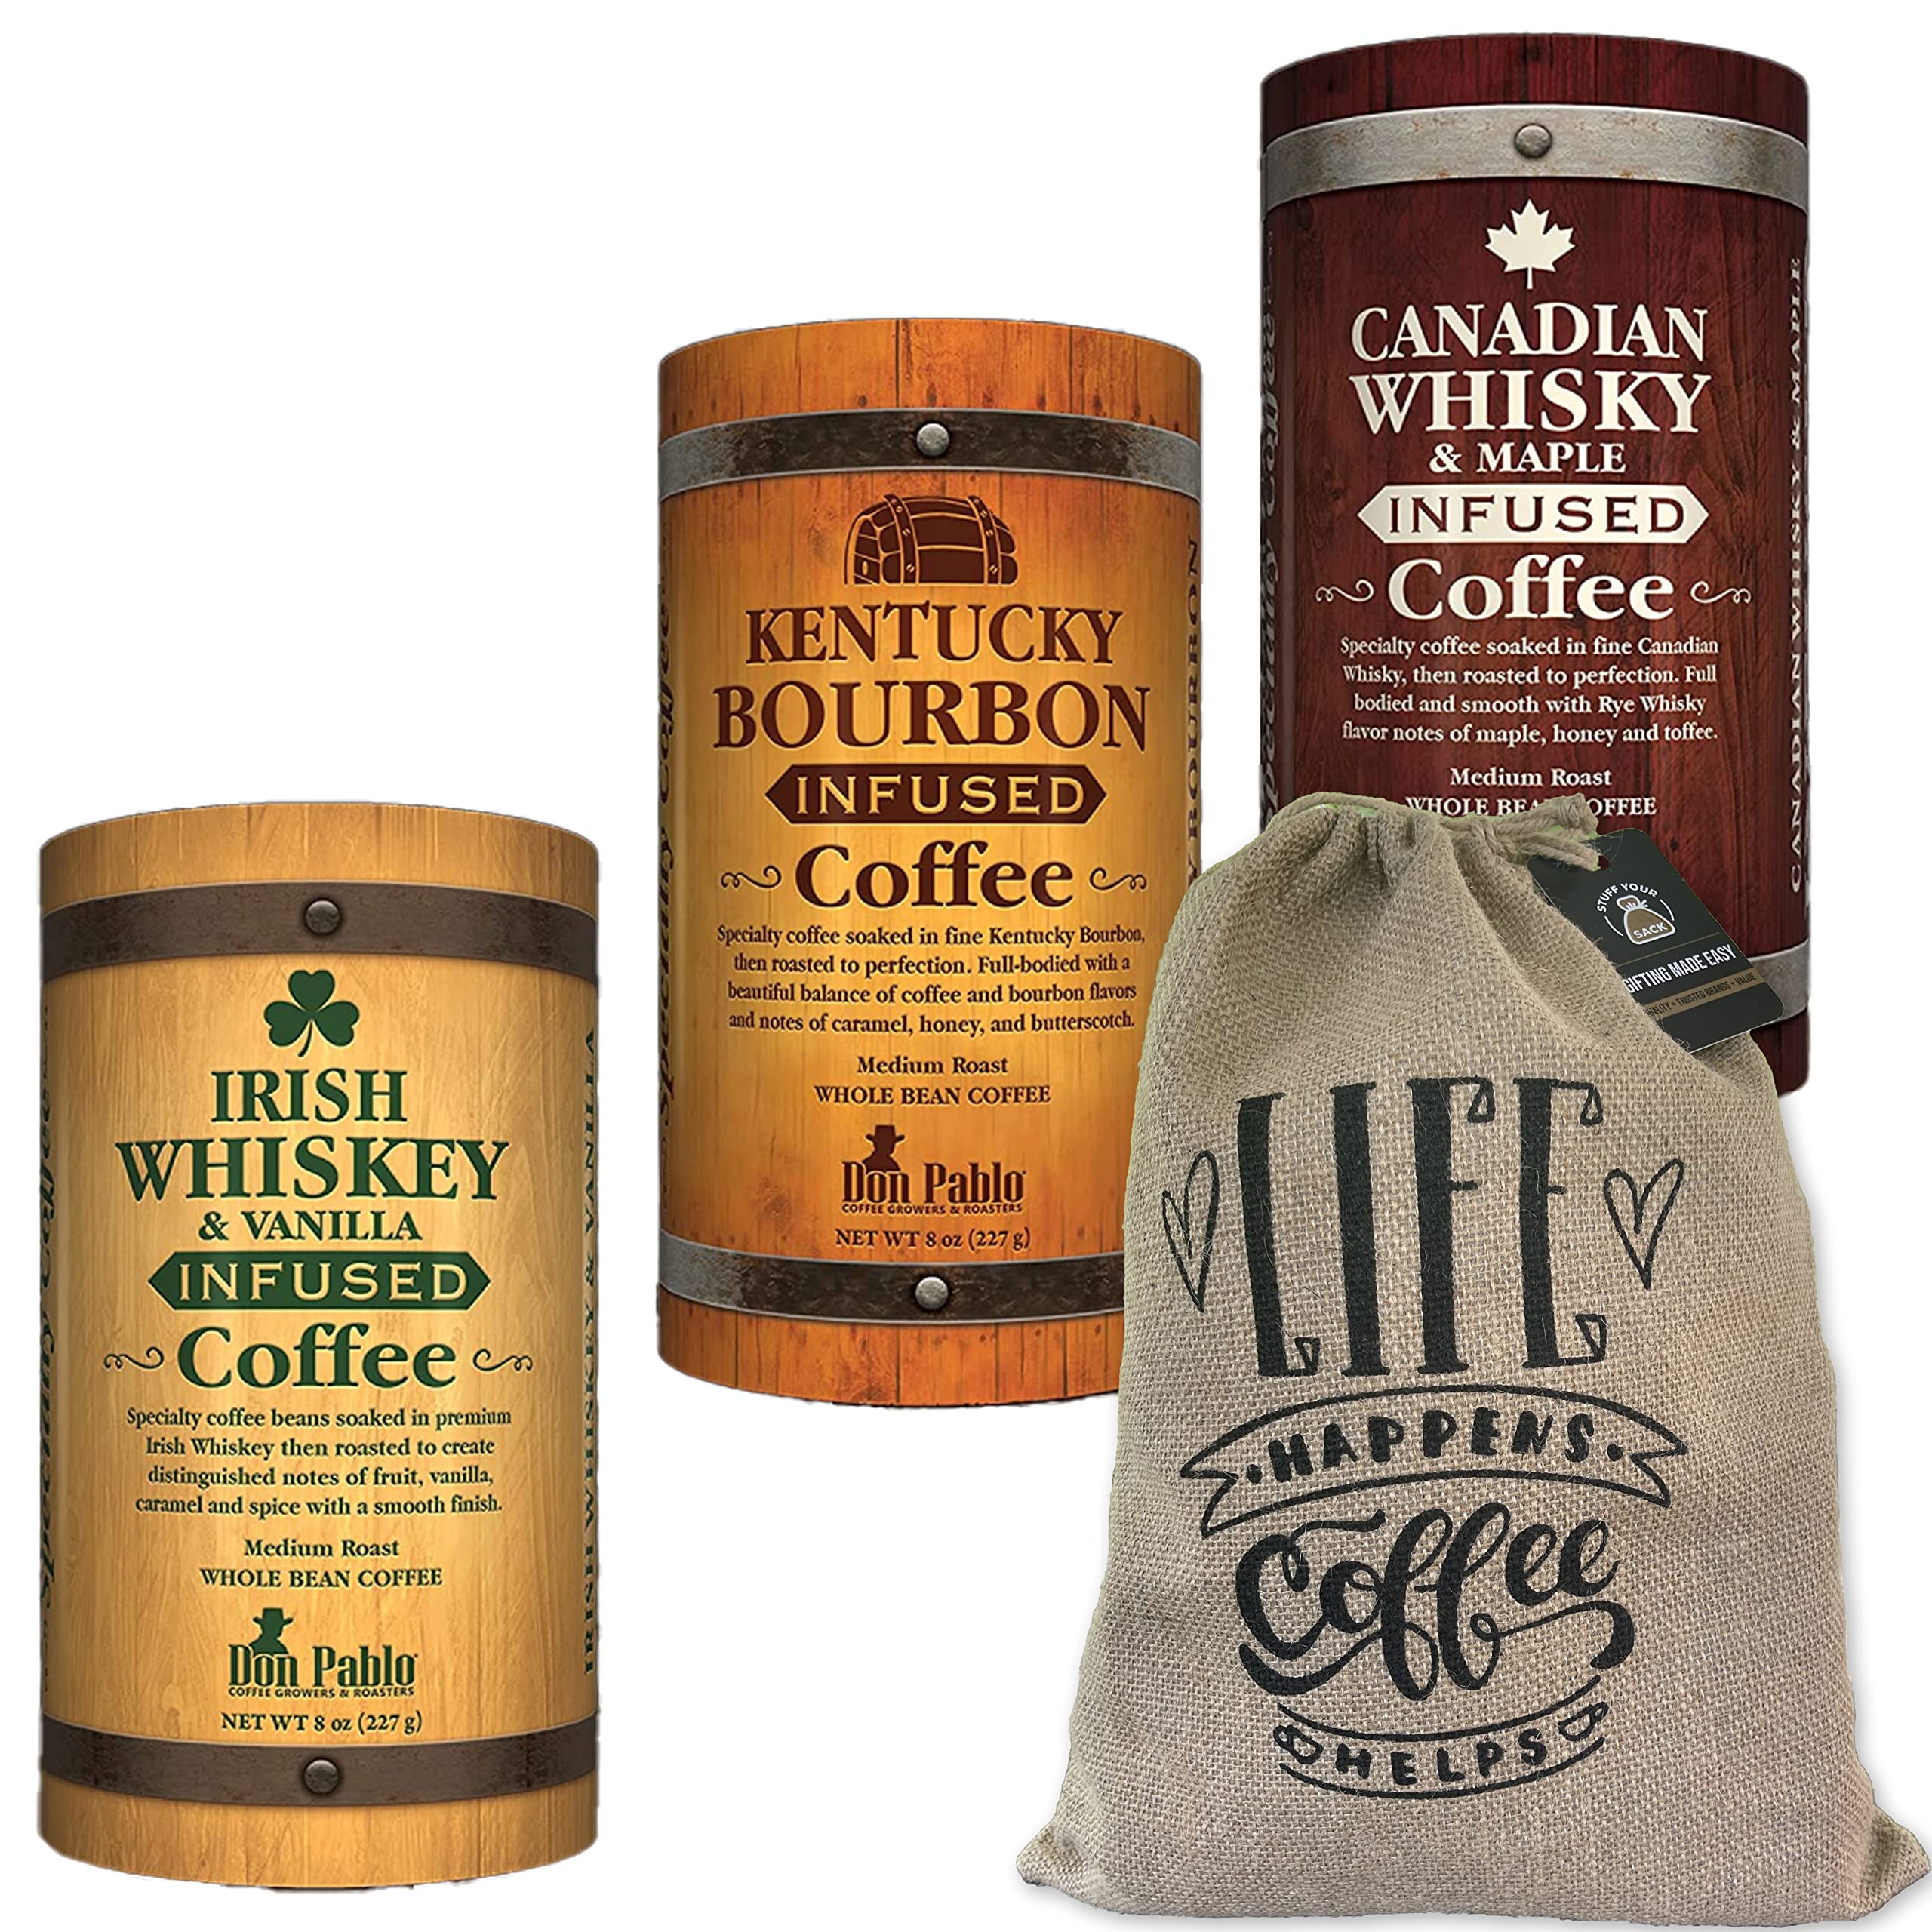 Don Pablo Whiskey Infused Coffee Gift Set - Medium Roast Whole